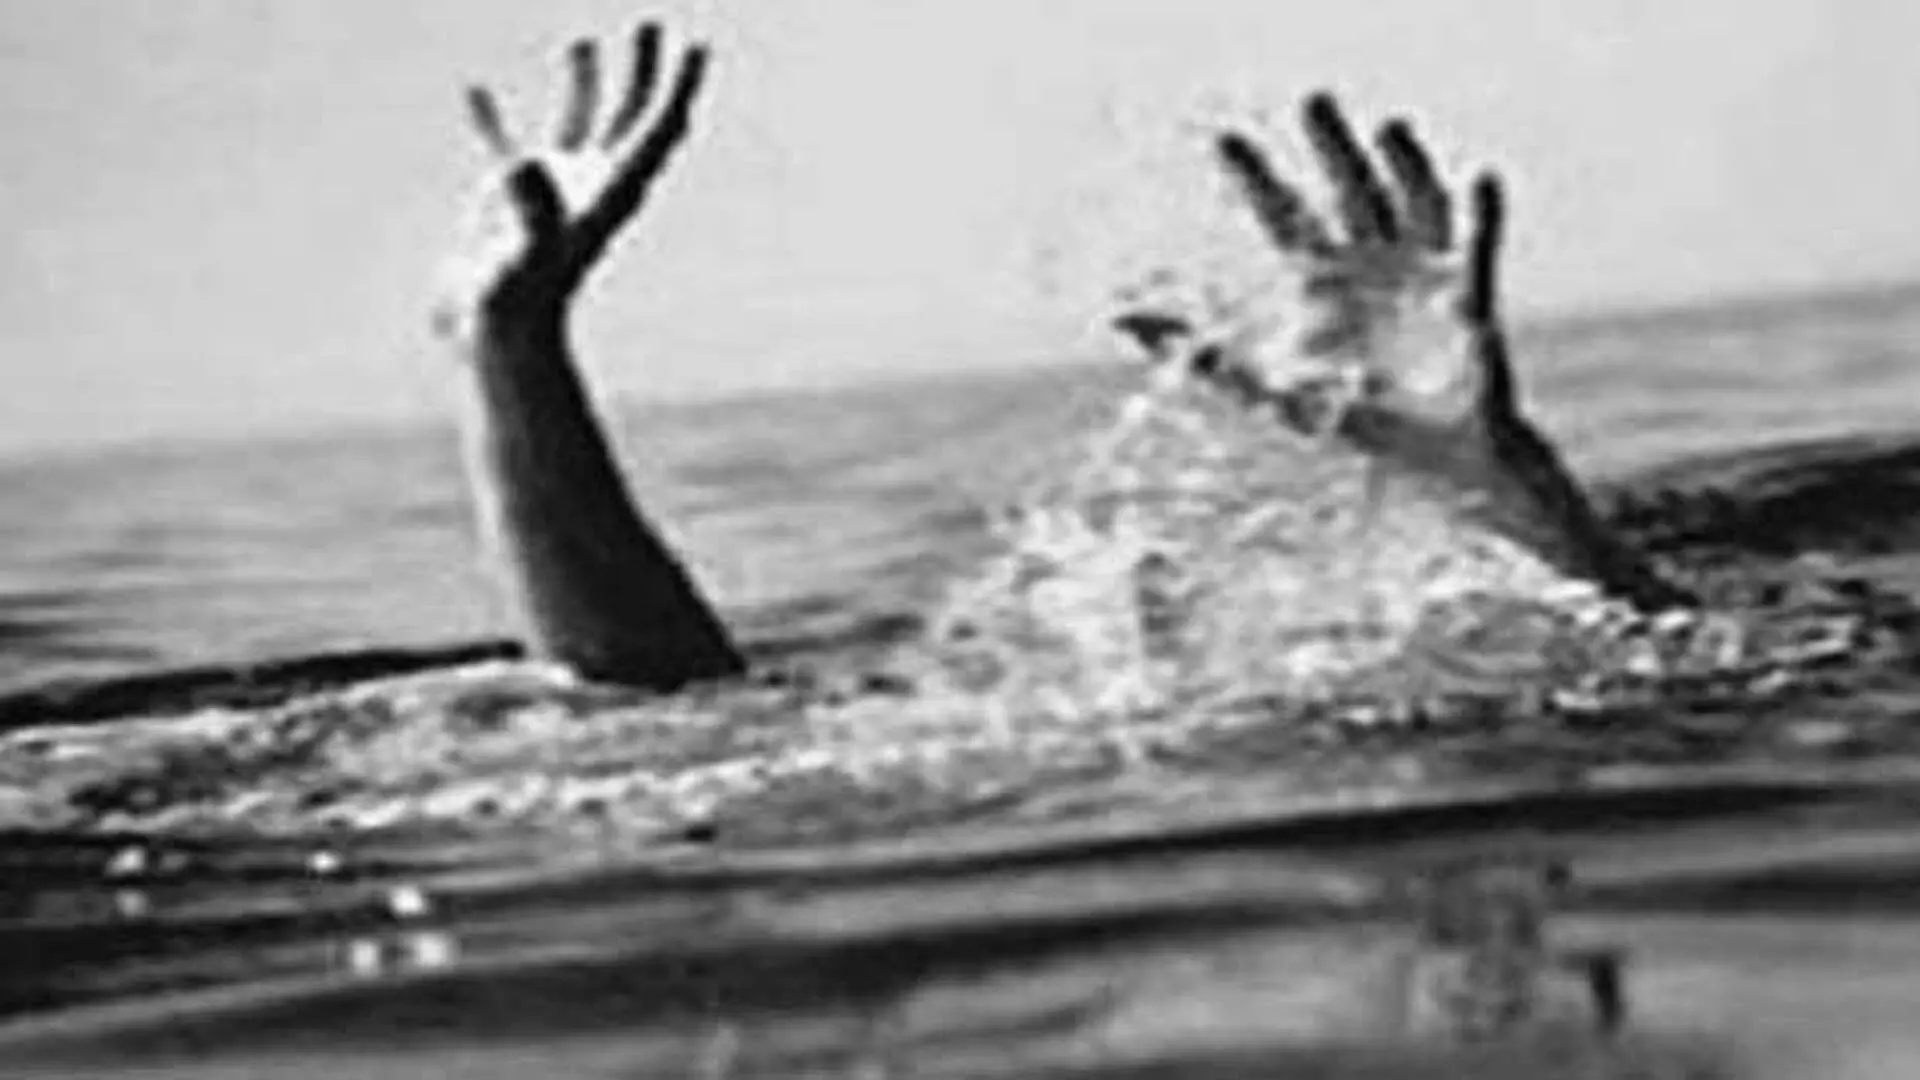 नशे में धुत दोस्तों के हमले से बचने की कोशिश में Ambattur lake में डूबा शख्स